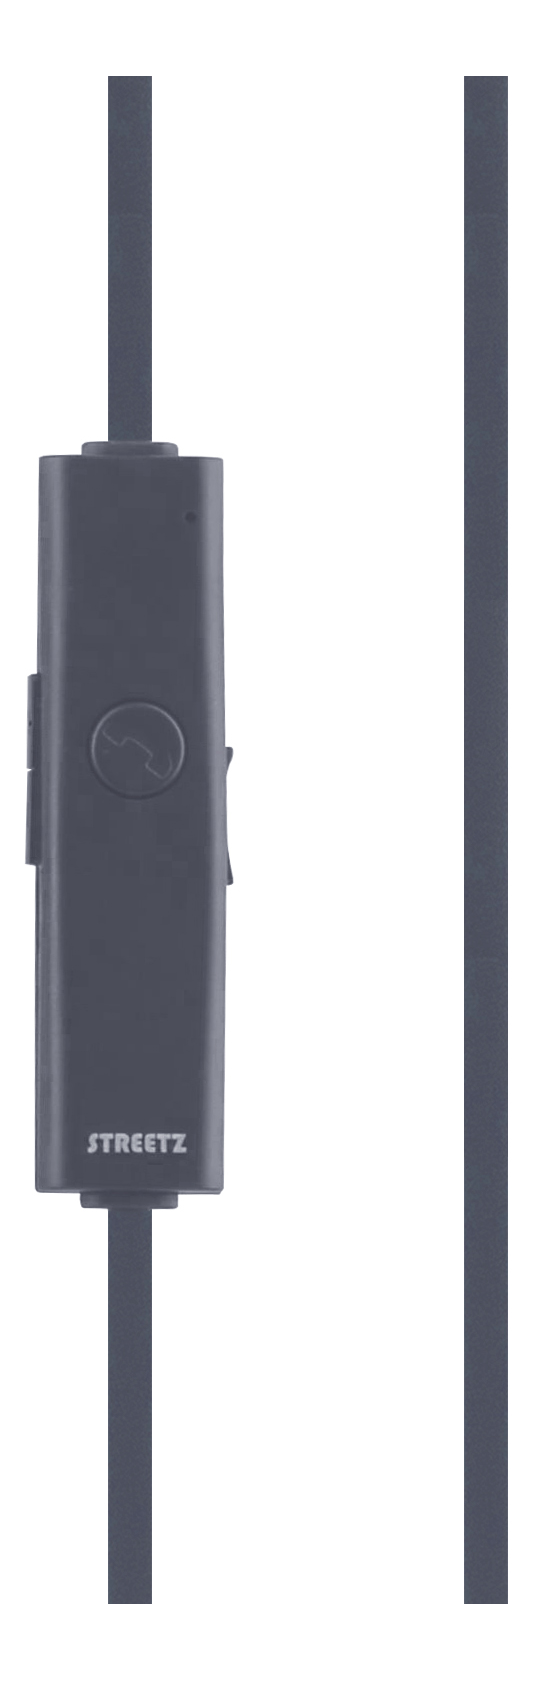 Streetz Bluetooth sporthörlurar med mikrofon, grå/blå